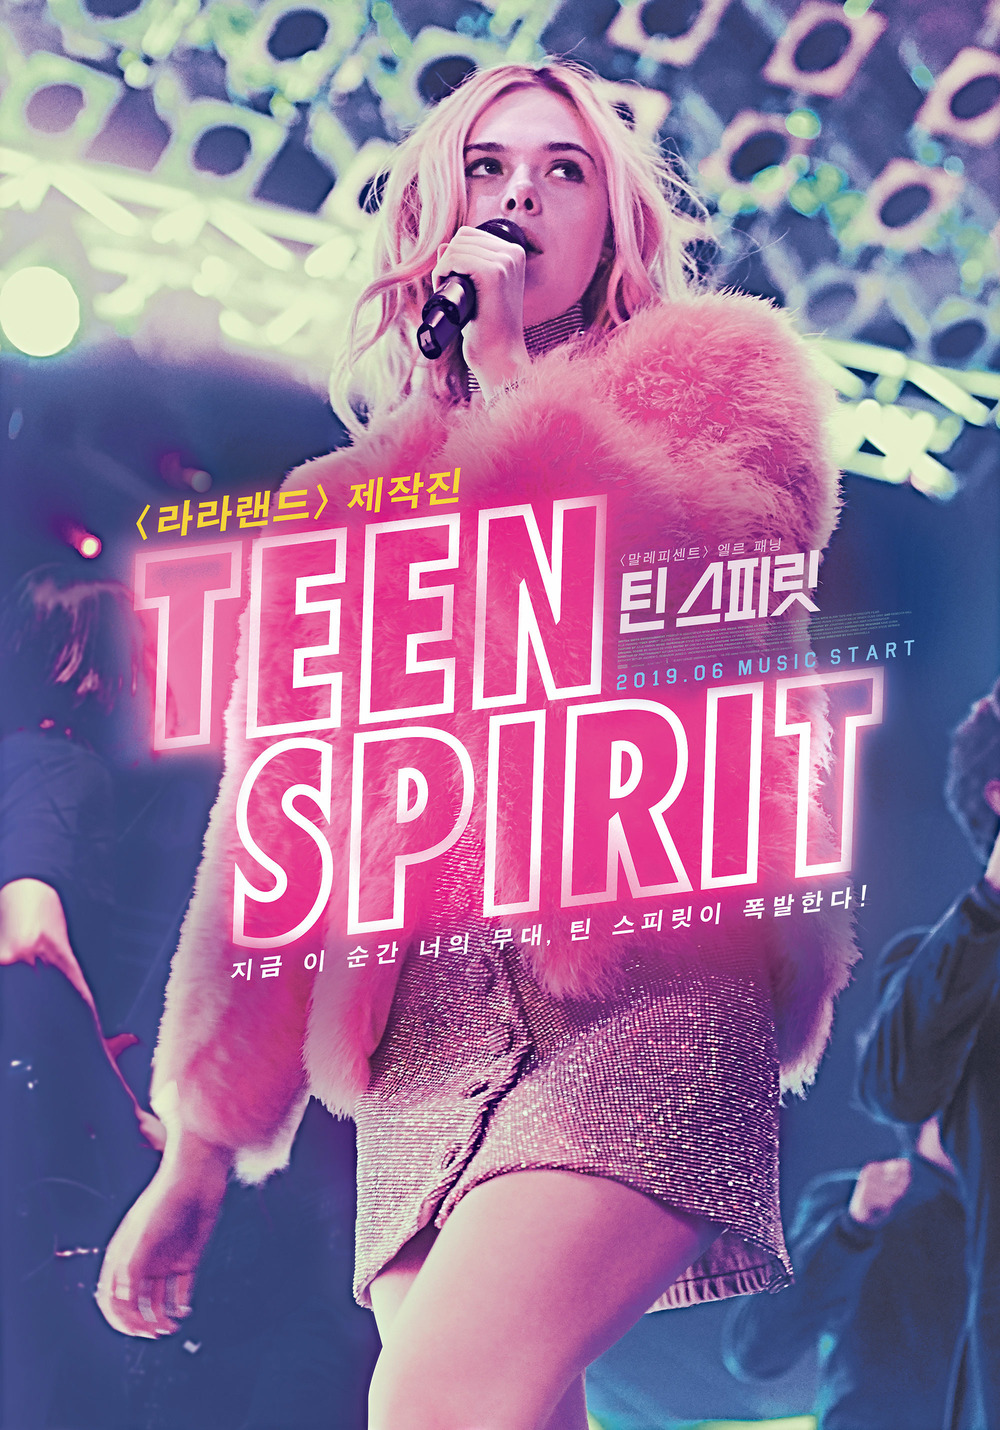 2018 Teen Spirit